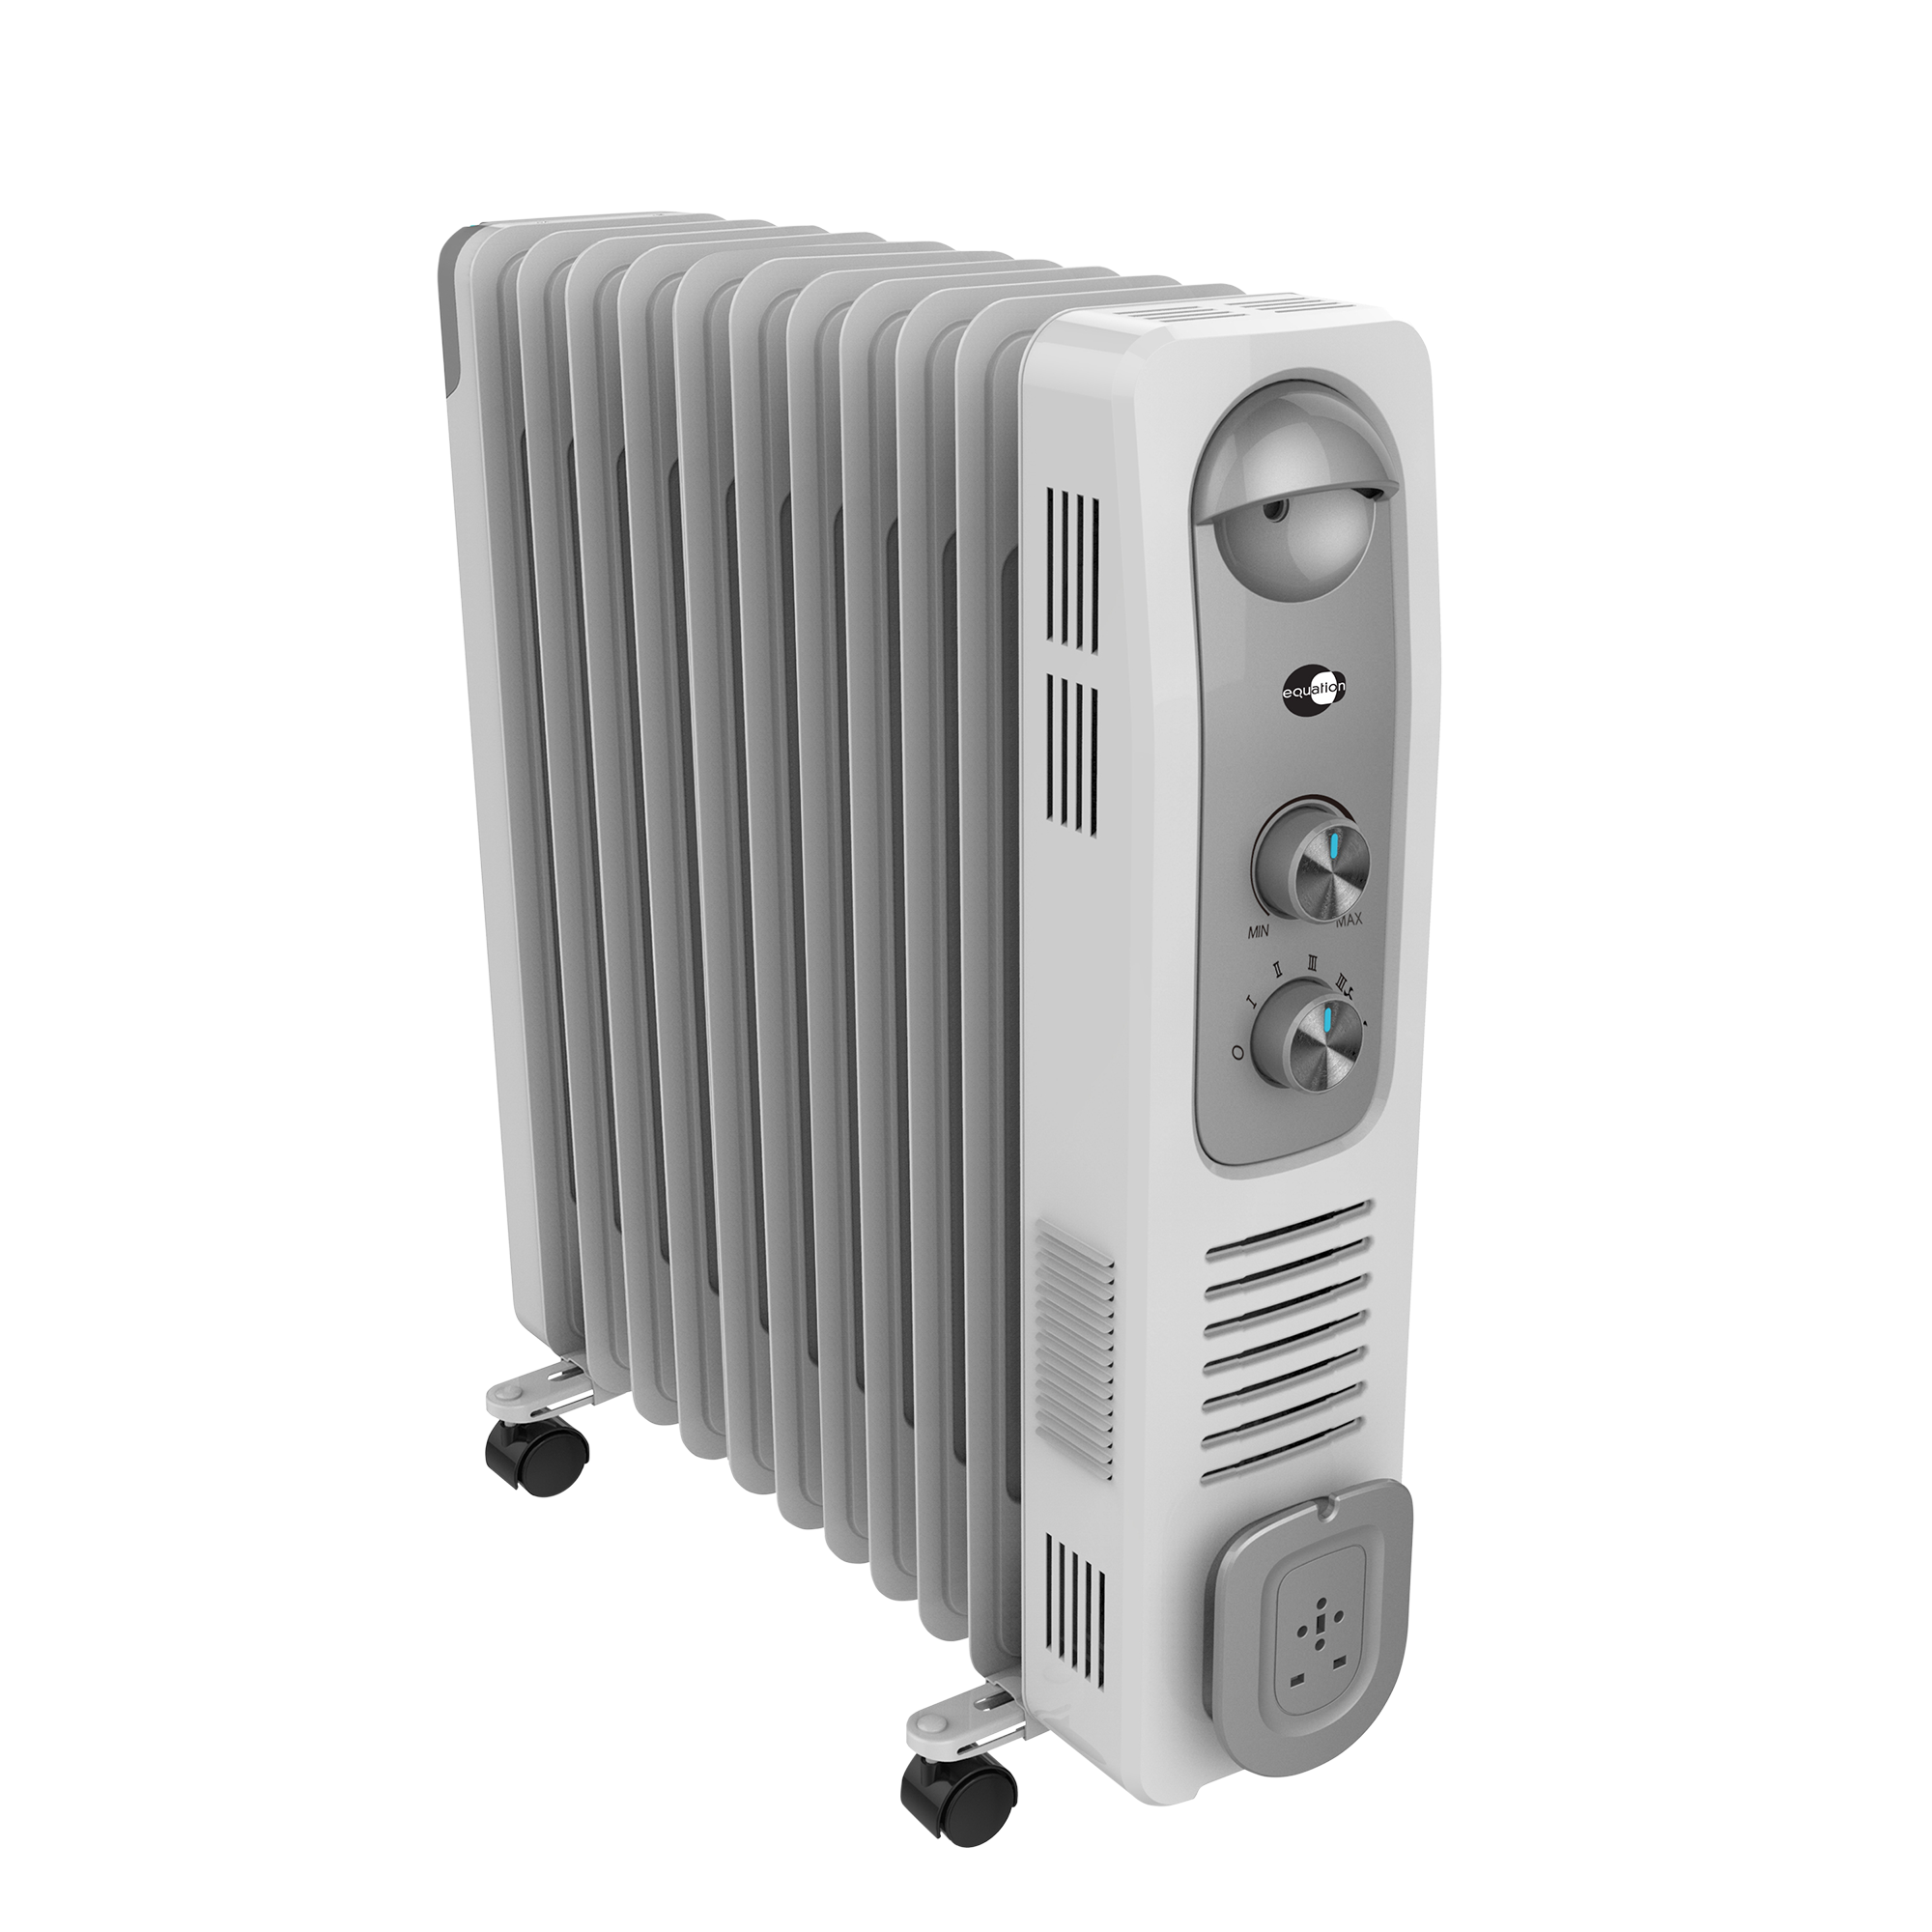 FM Calefacción RW-Mini Radiador de Aceite 7 Elementos 900W